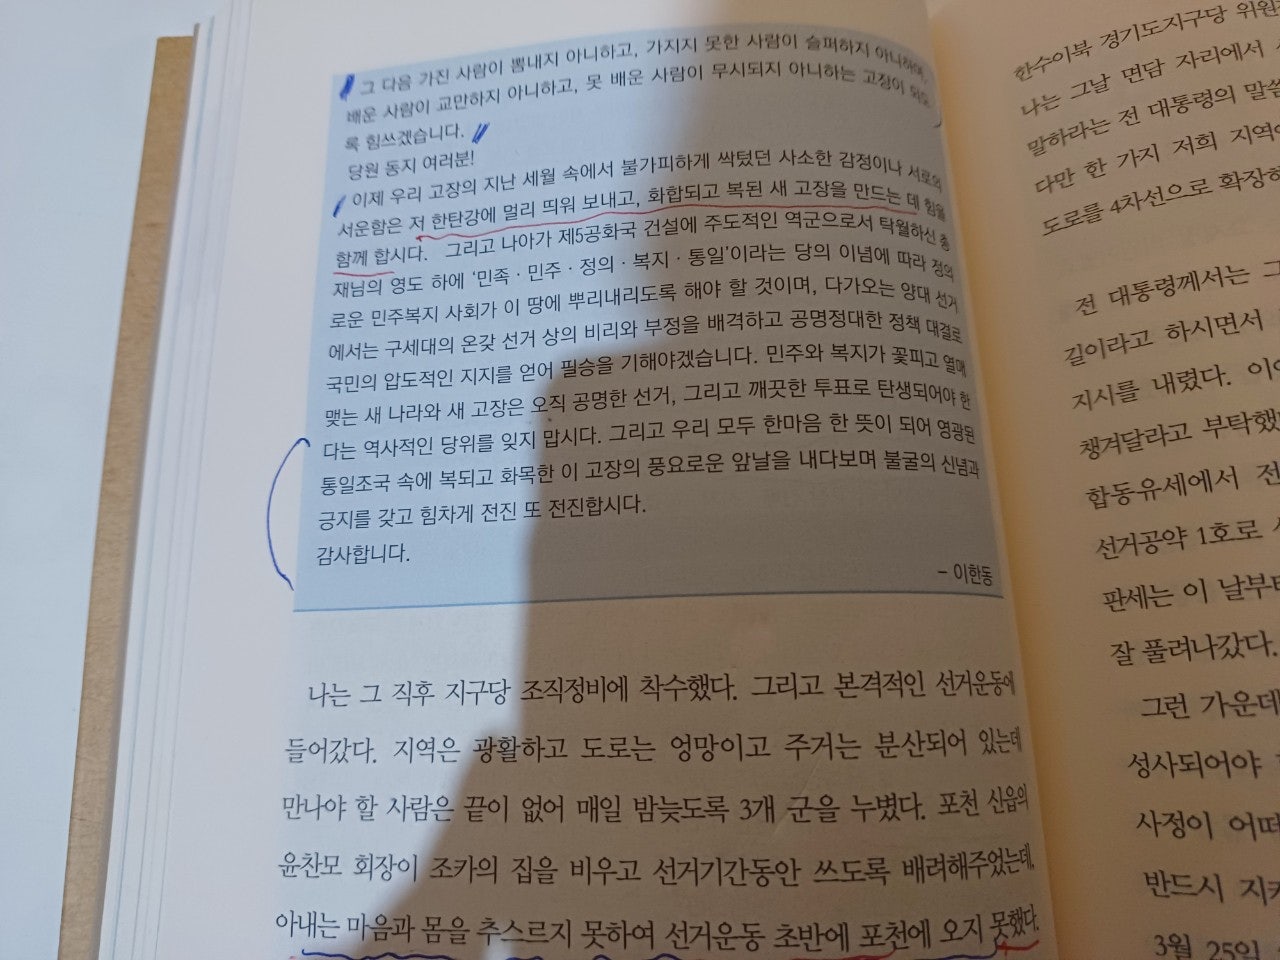 경기도 전시컨벤션담당 사무관 박원철